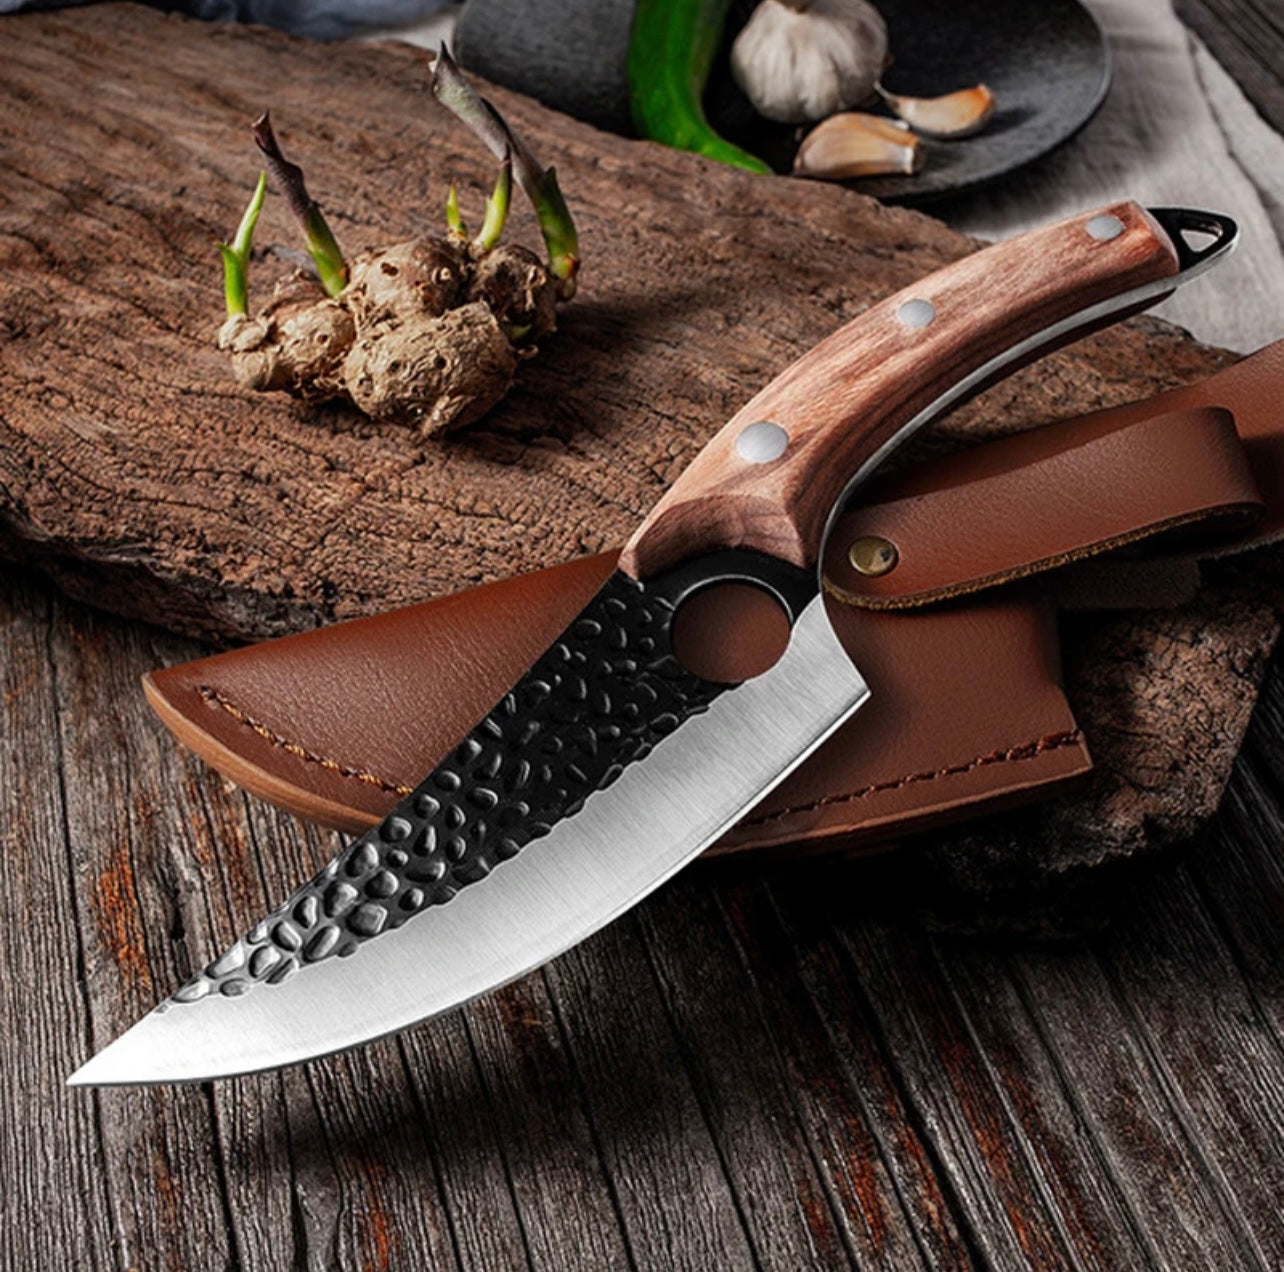 Hand-Forged Damascus Steel Knife - BestCheffs